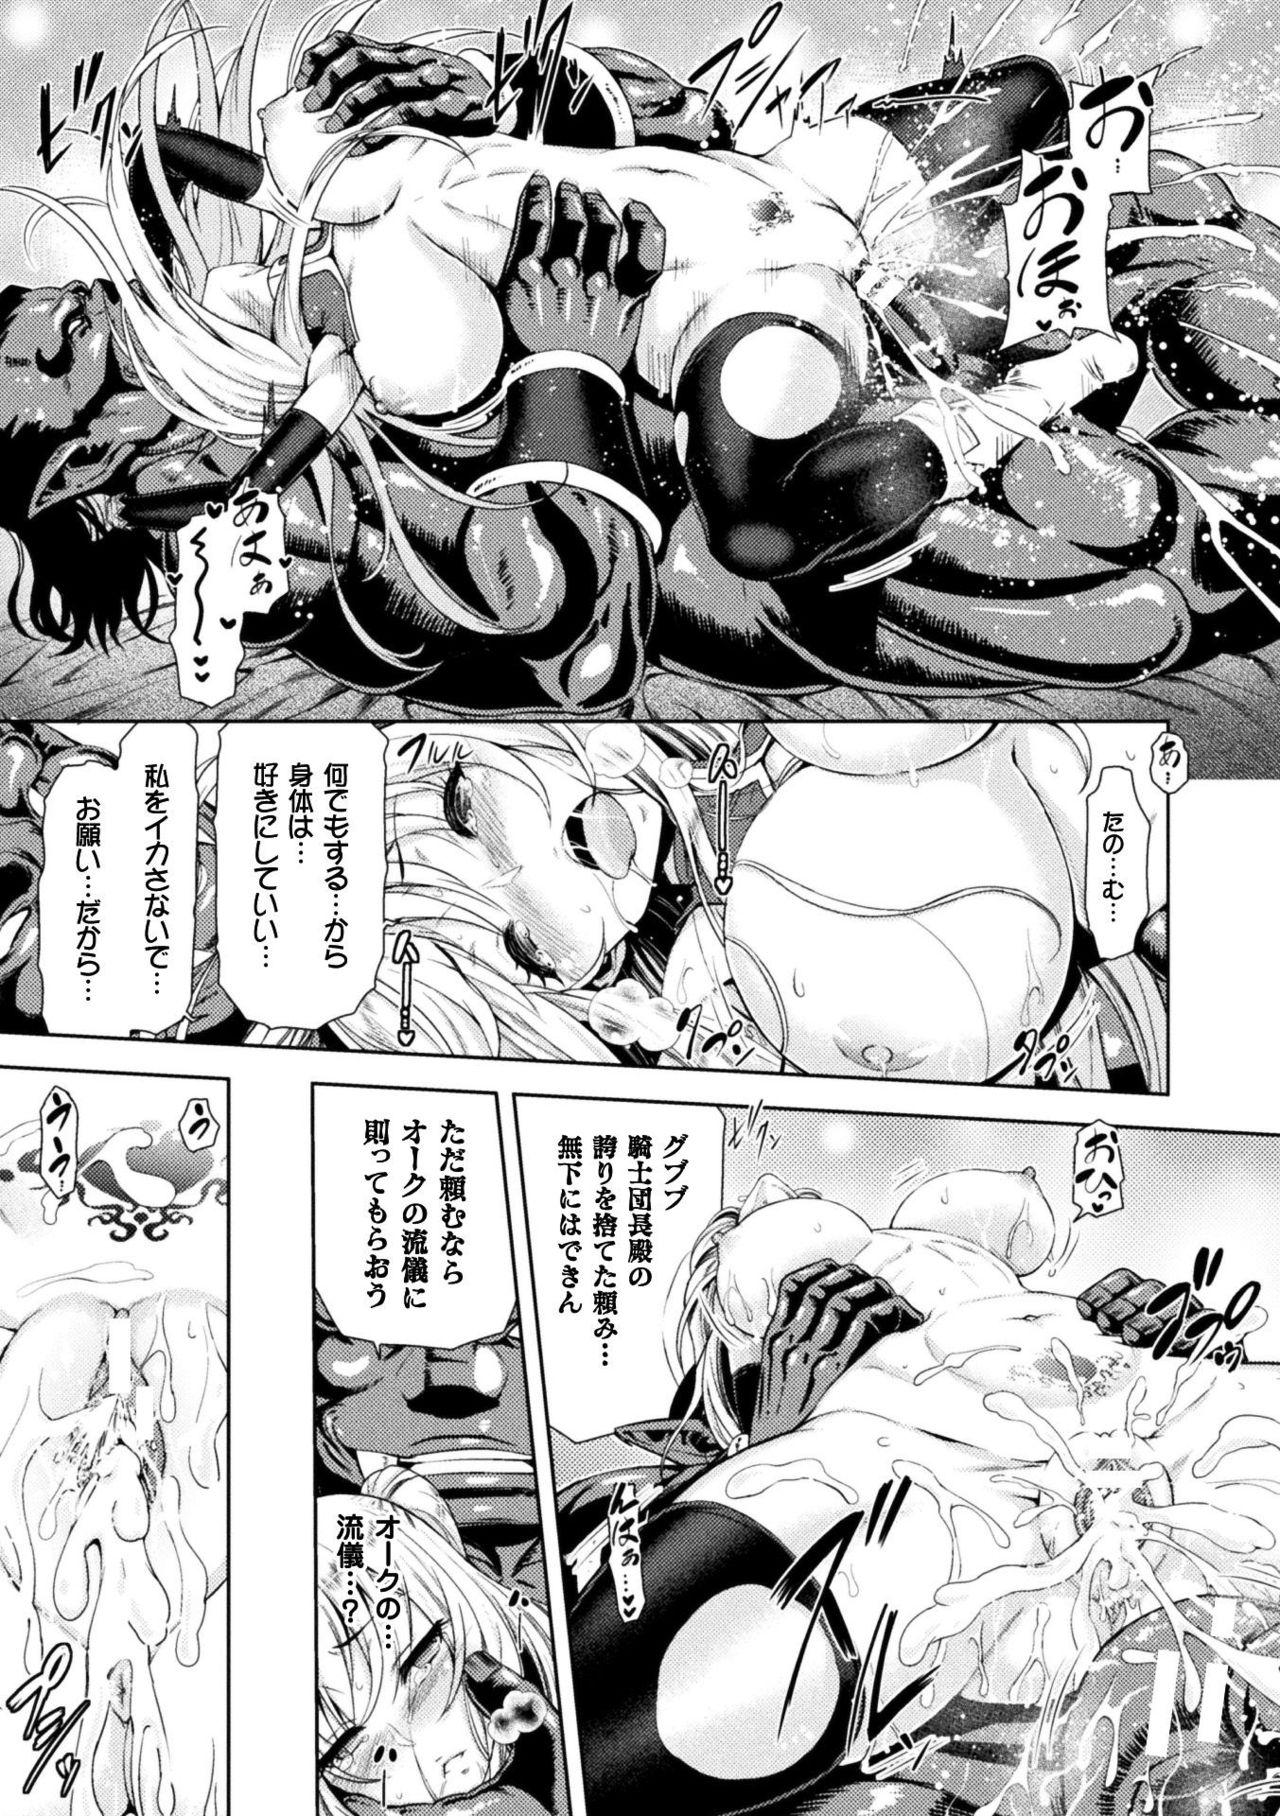 Seigi no Heroine Kangoku File Vol. 15 58